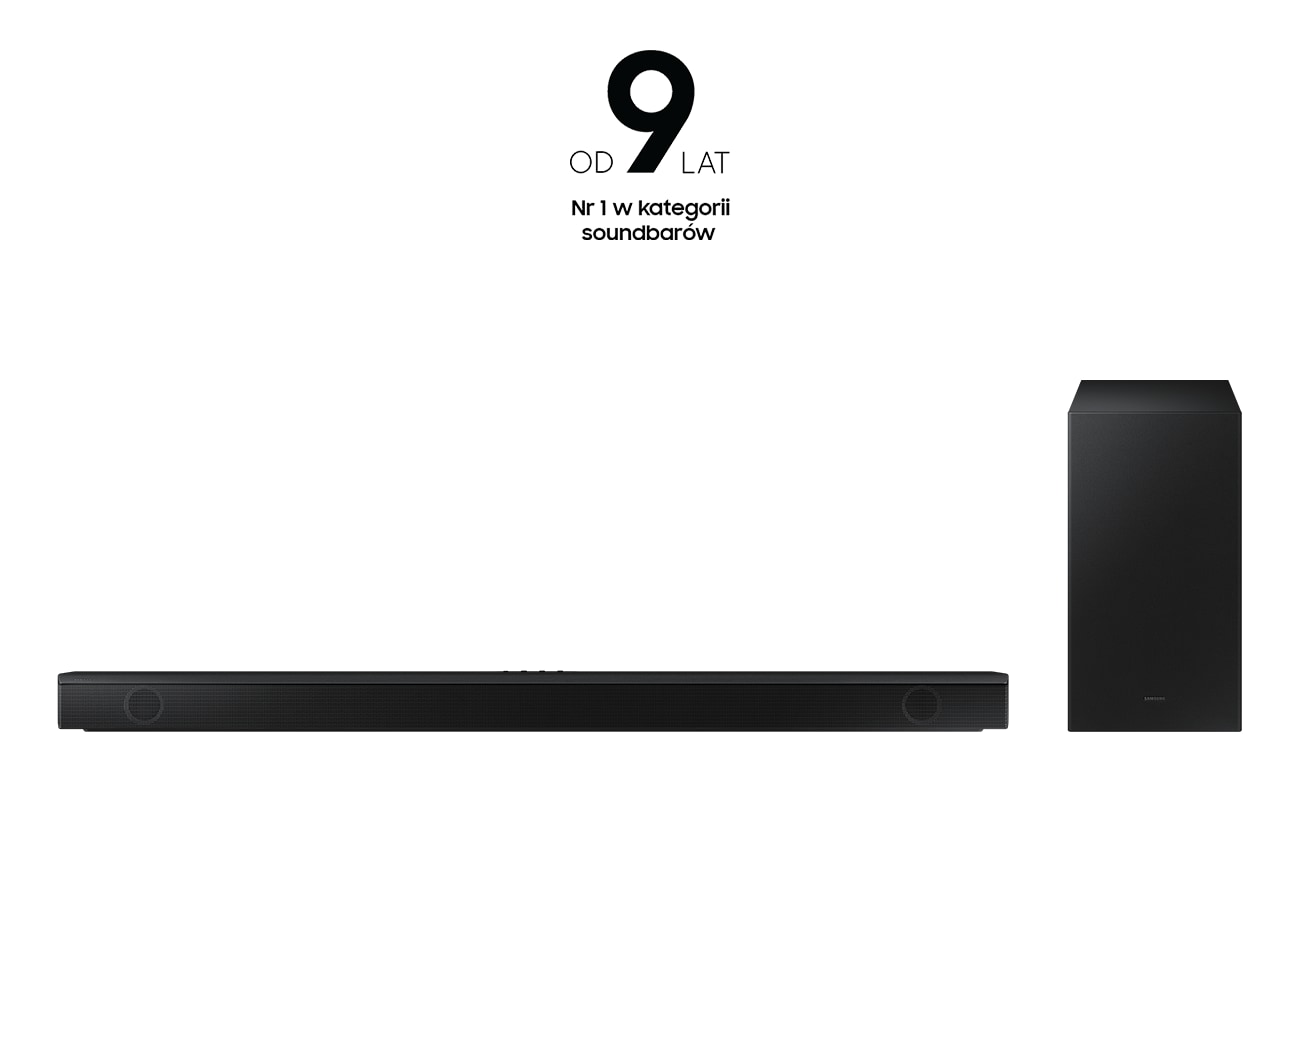 Nowy Samsung Soundbar B-seria HW-B650 - belka widok z przodu